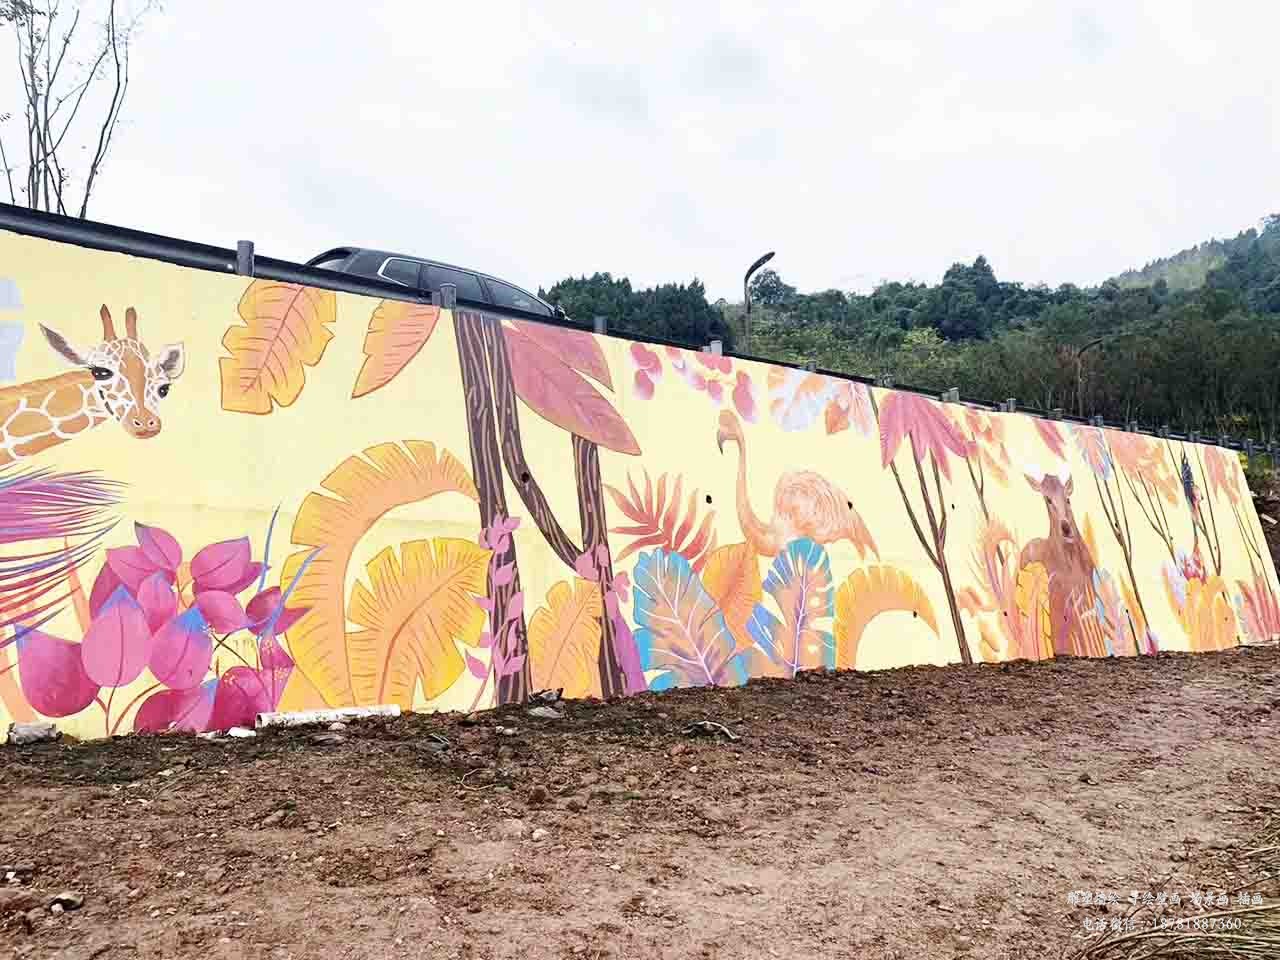 振新美丽乡村景区挡泥墙卡通壁画墙绘彩绘涂鸦成都澜泉文化